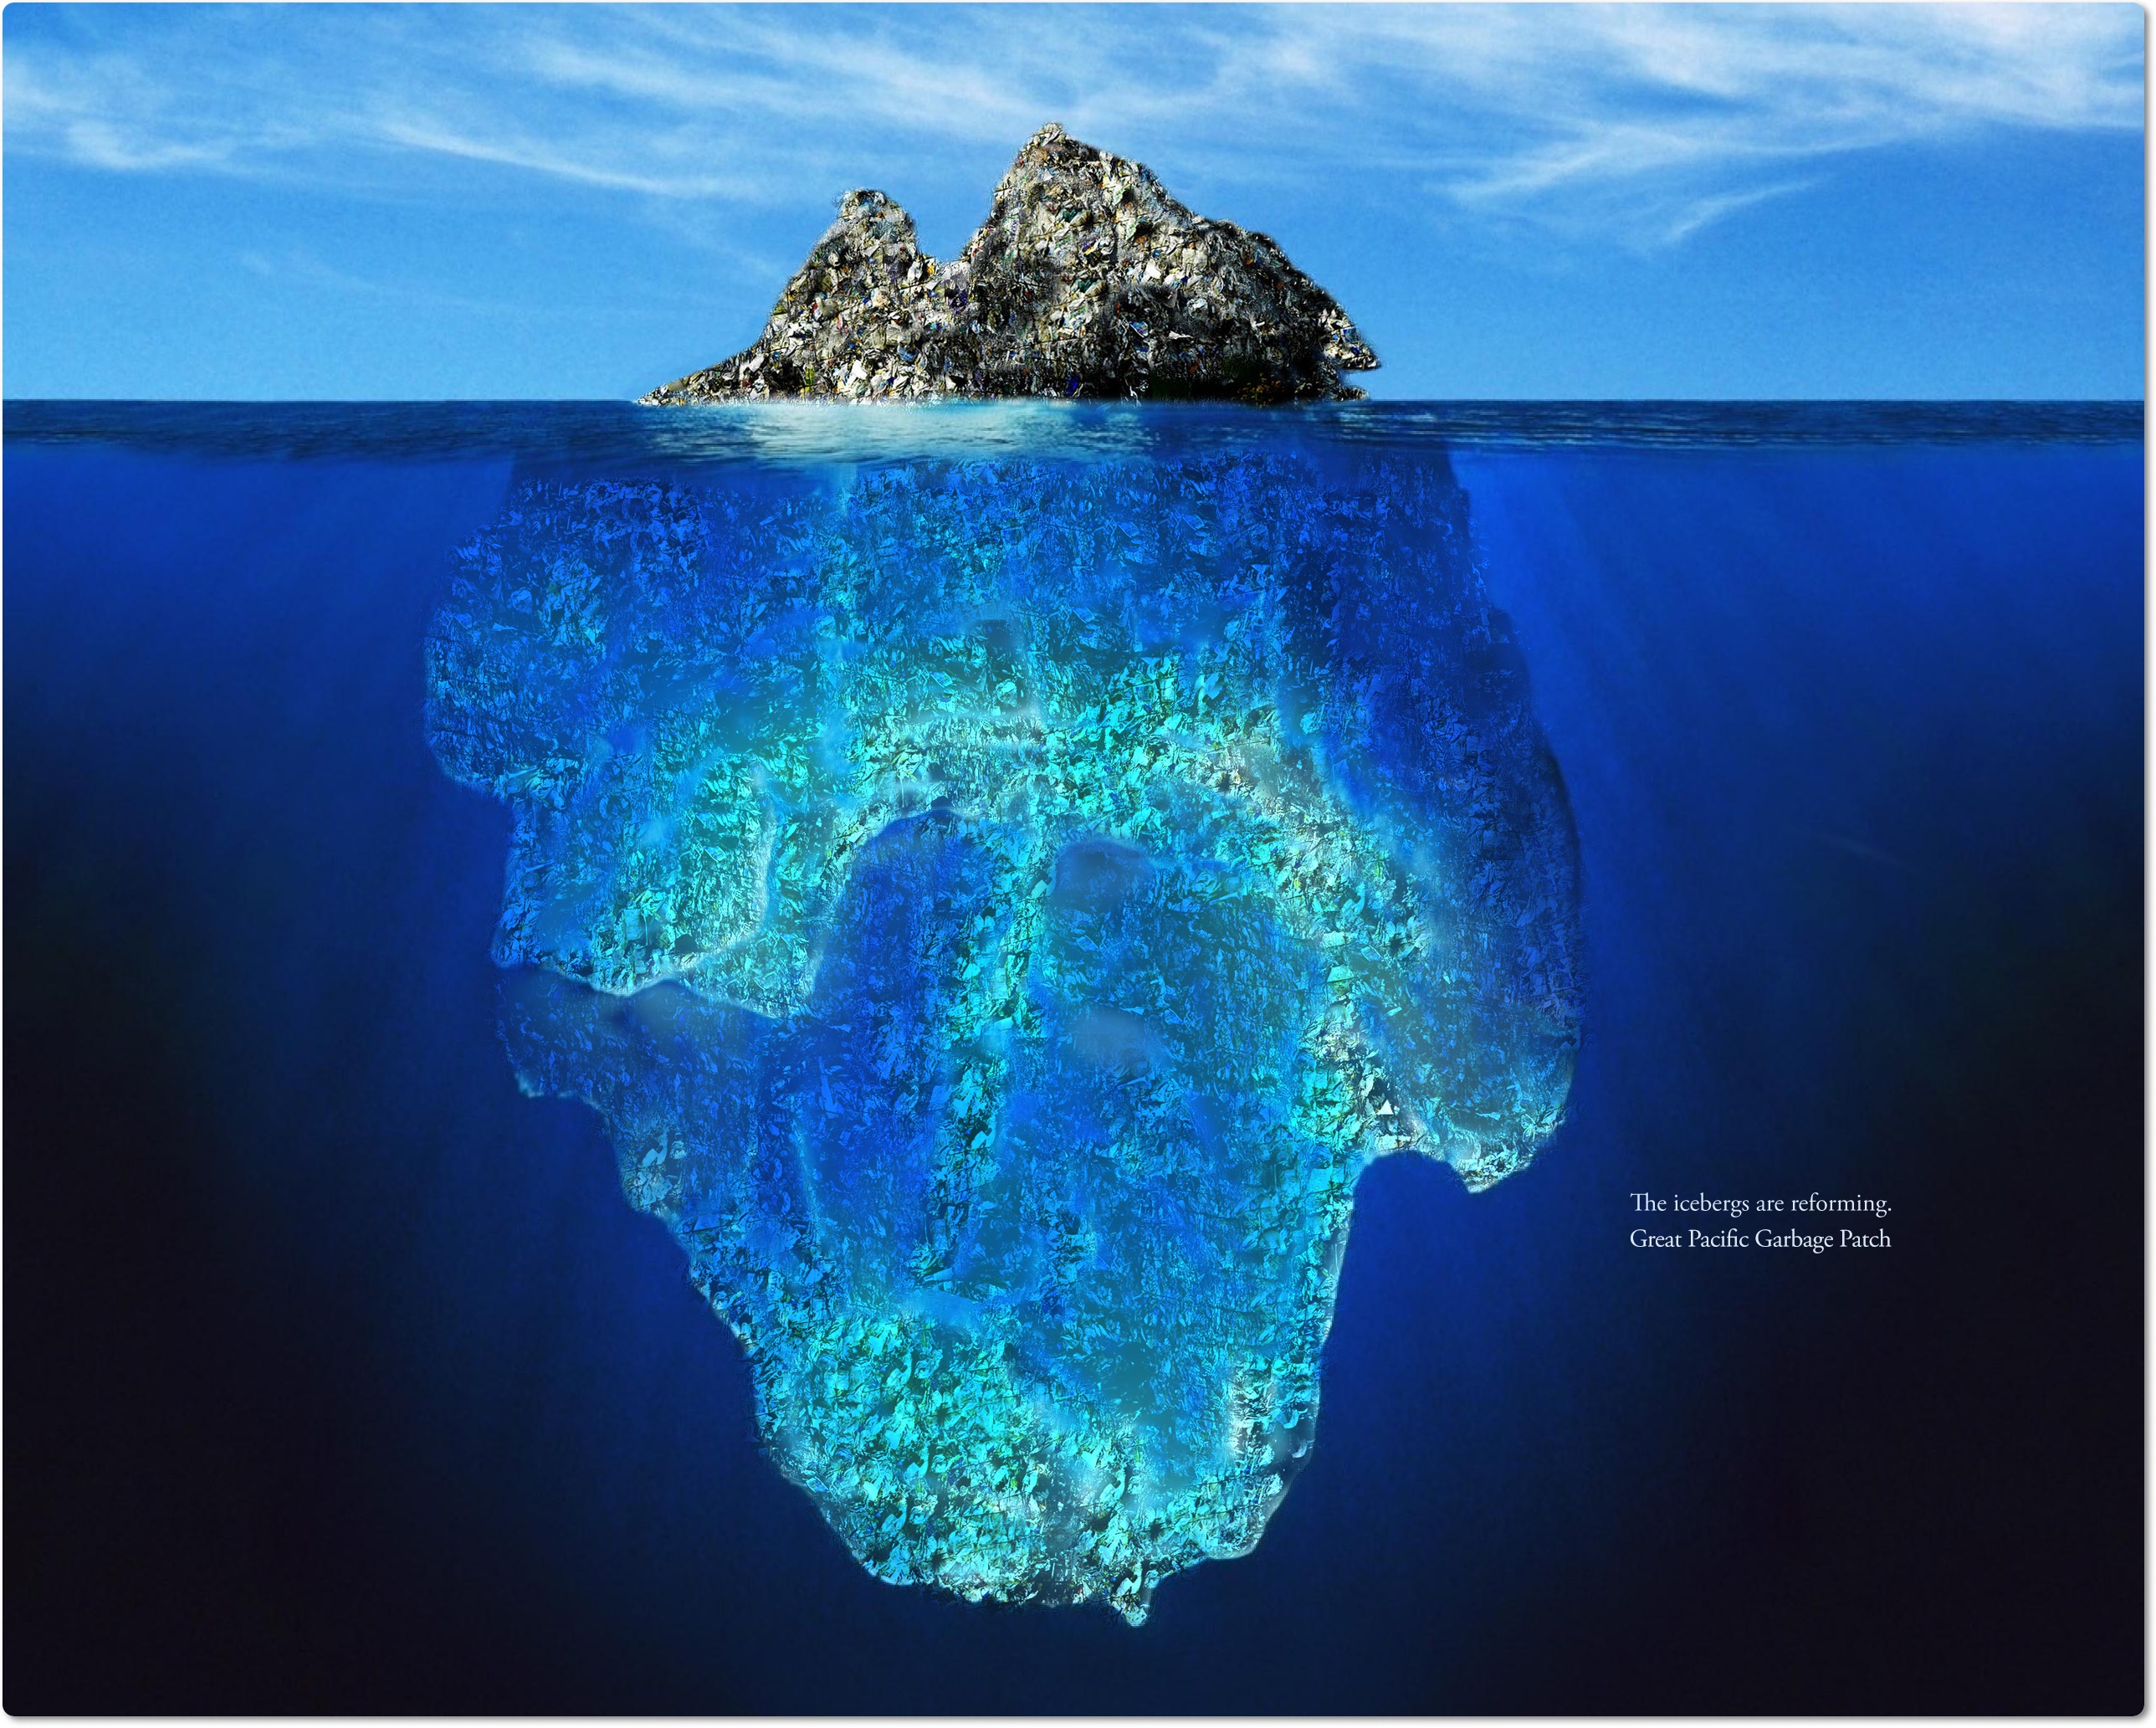 Morje plastike na kopnem, otoki plastike v morju – plastične ribe pa na